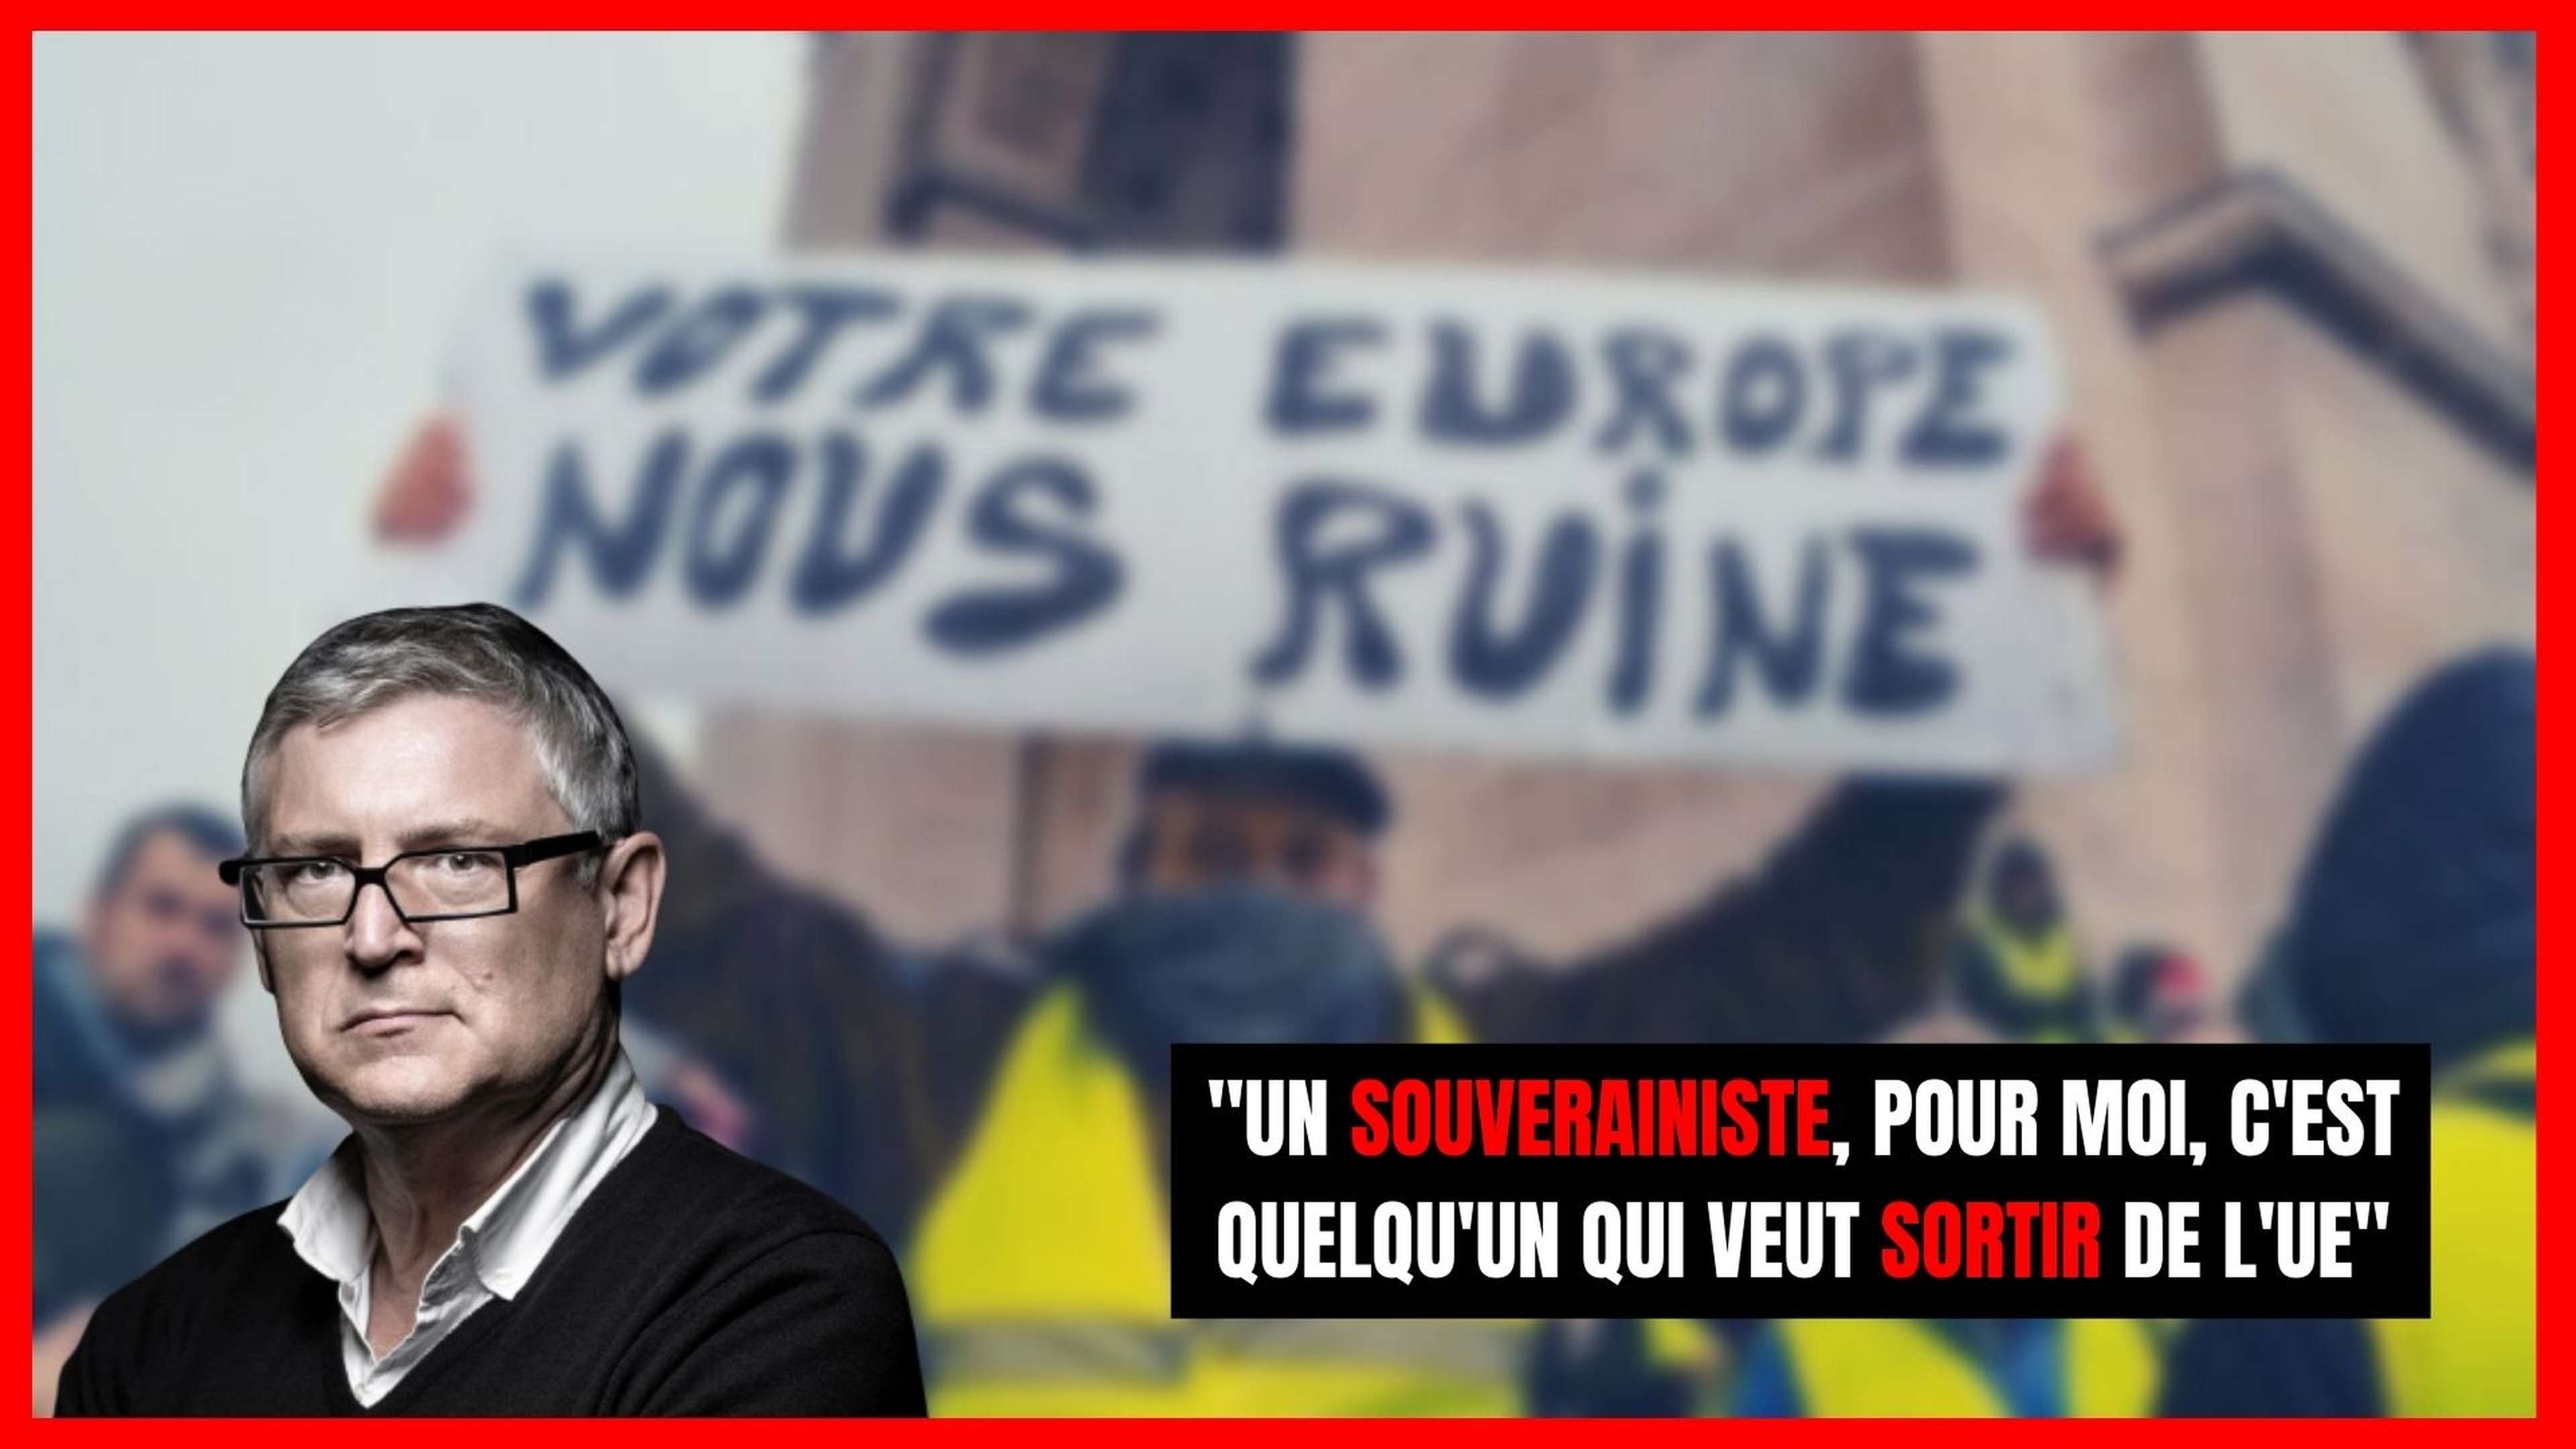 Michel Onfray : "Un souverainiste, pour moi, c'est quelqu'un qui veut sortir de l'Europe"